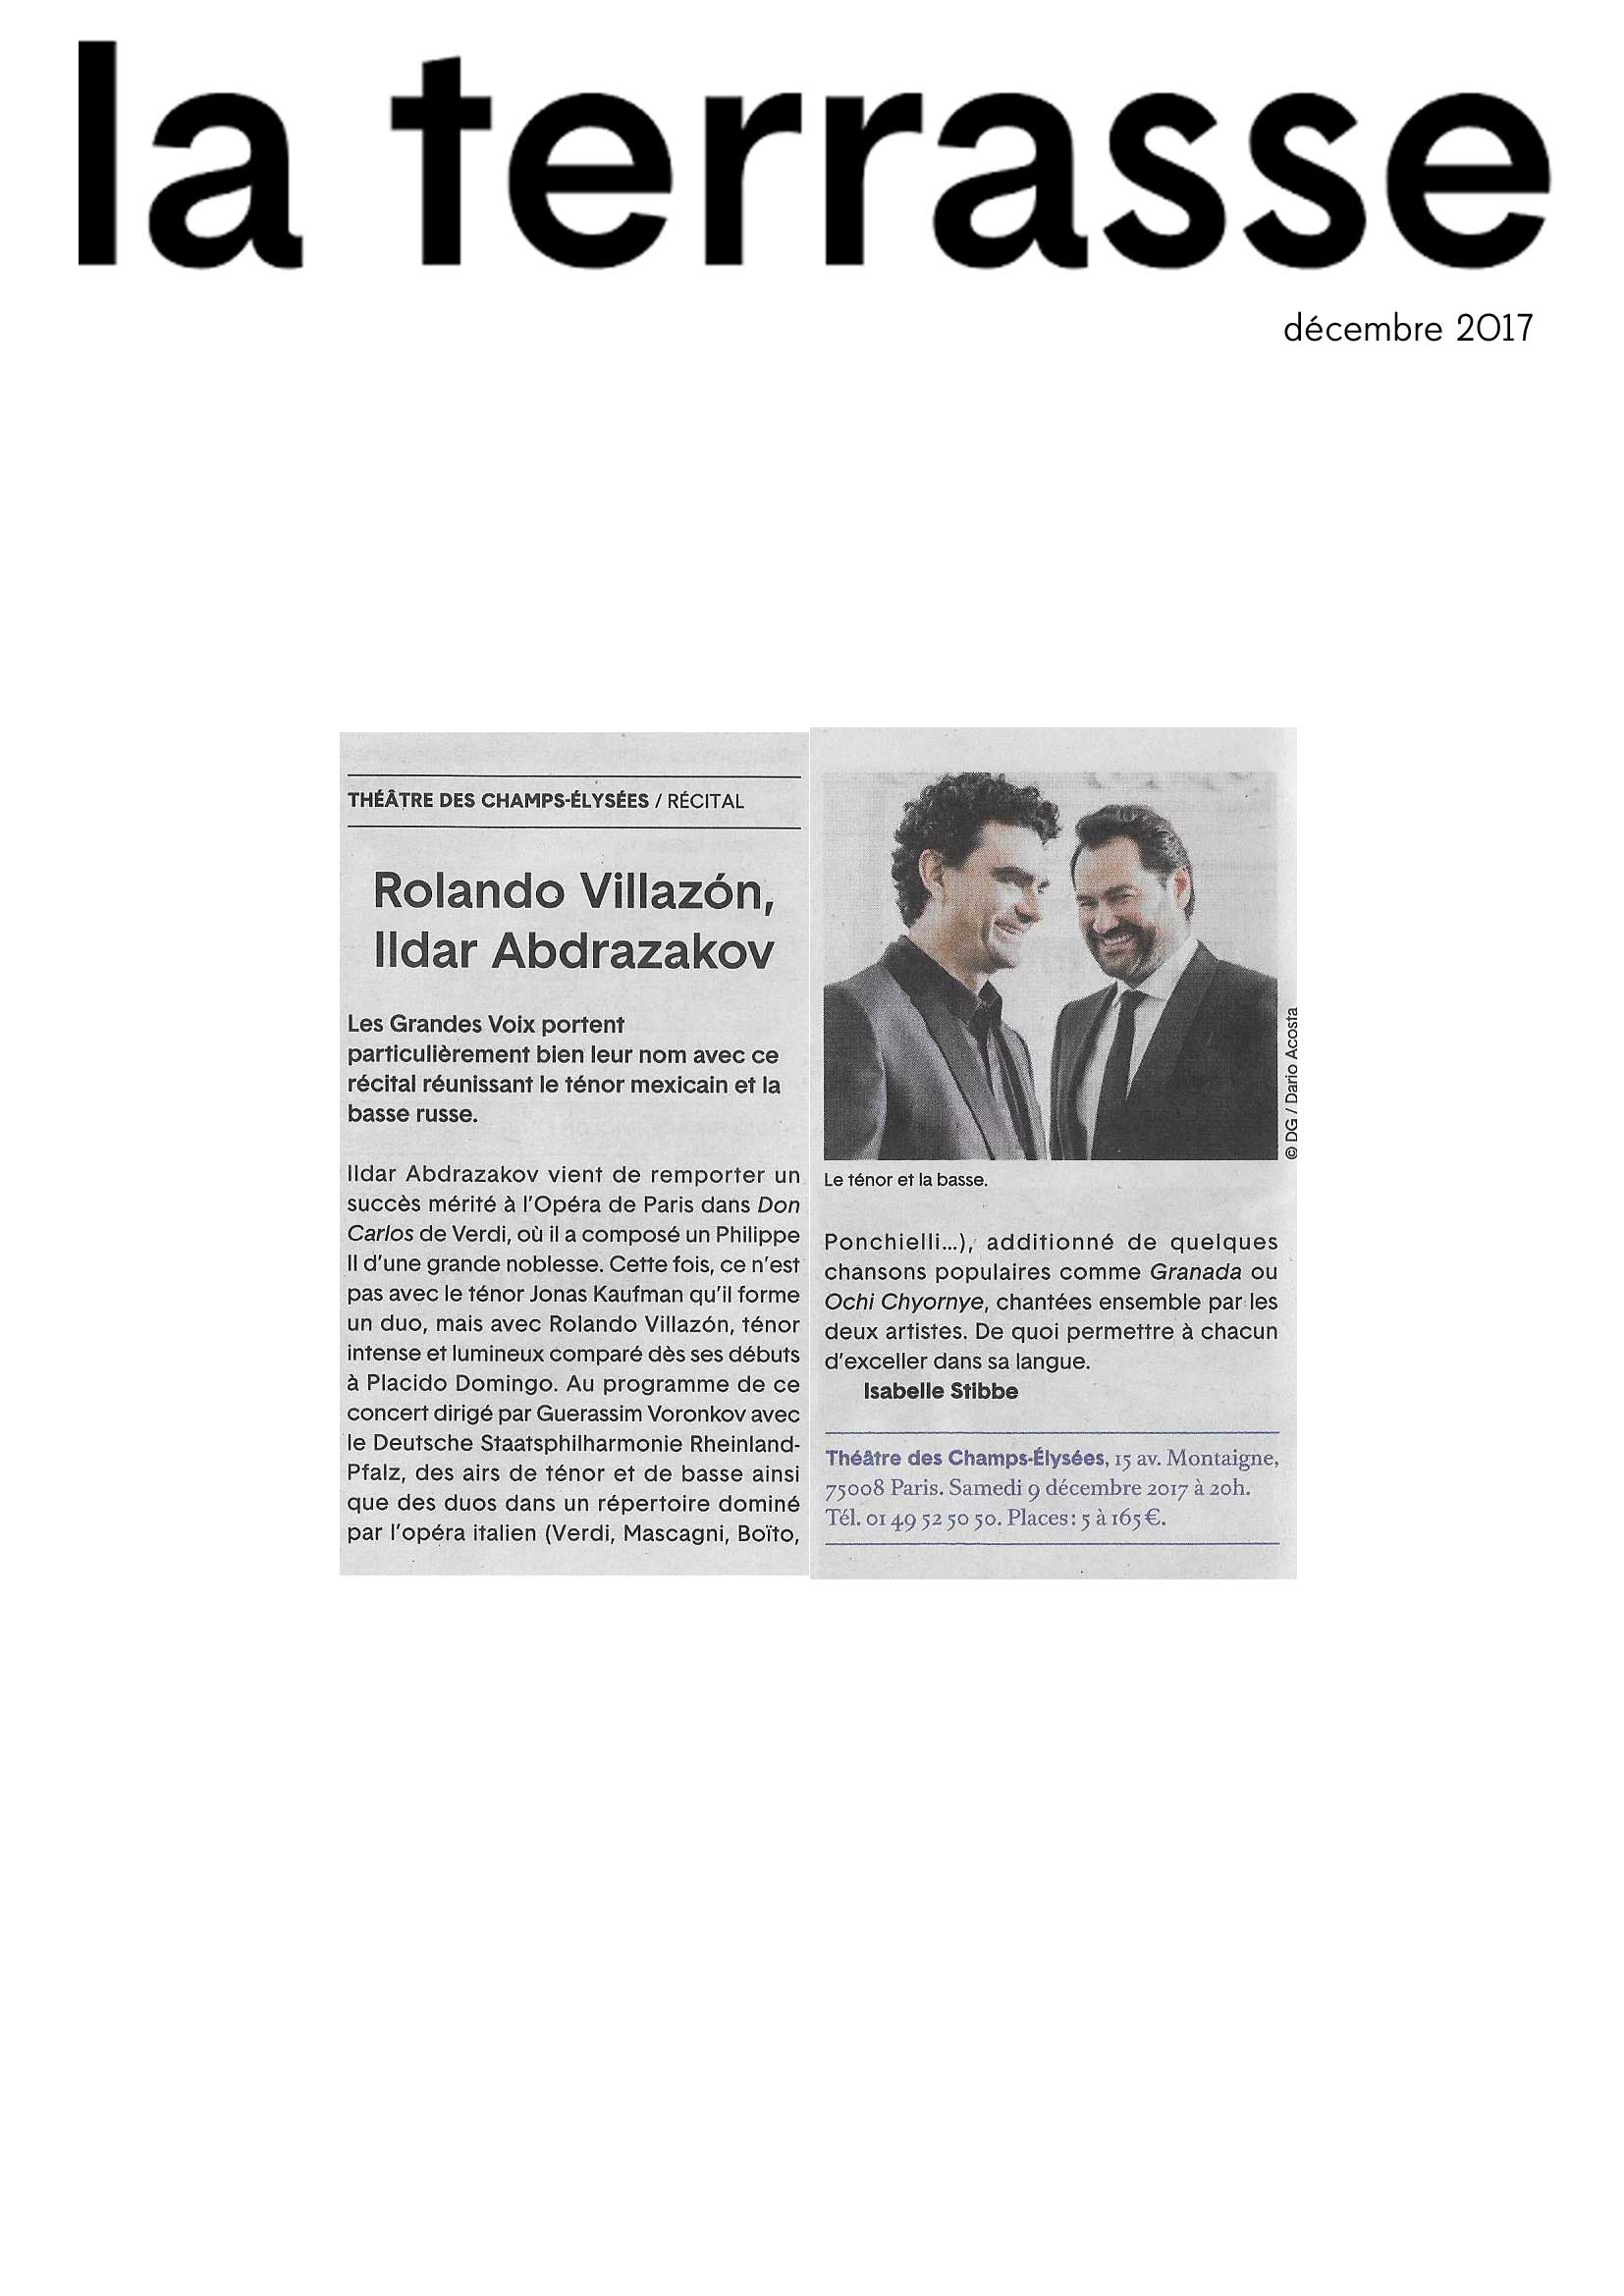 Annonce du récital de Rolando Villazón et Ildar Abdrazakov au Théâtre des Champs-Elysées le 9 décembre 2017 dans le numéro de La Terrasse de décembre 2017.